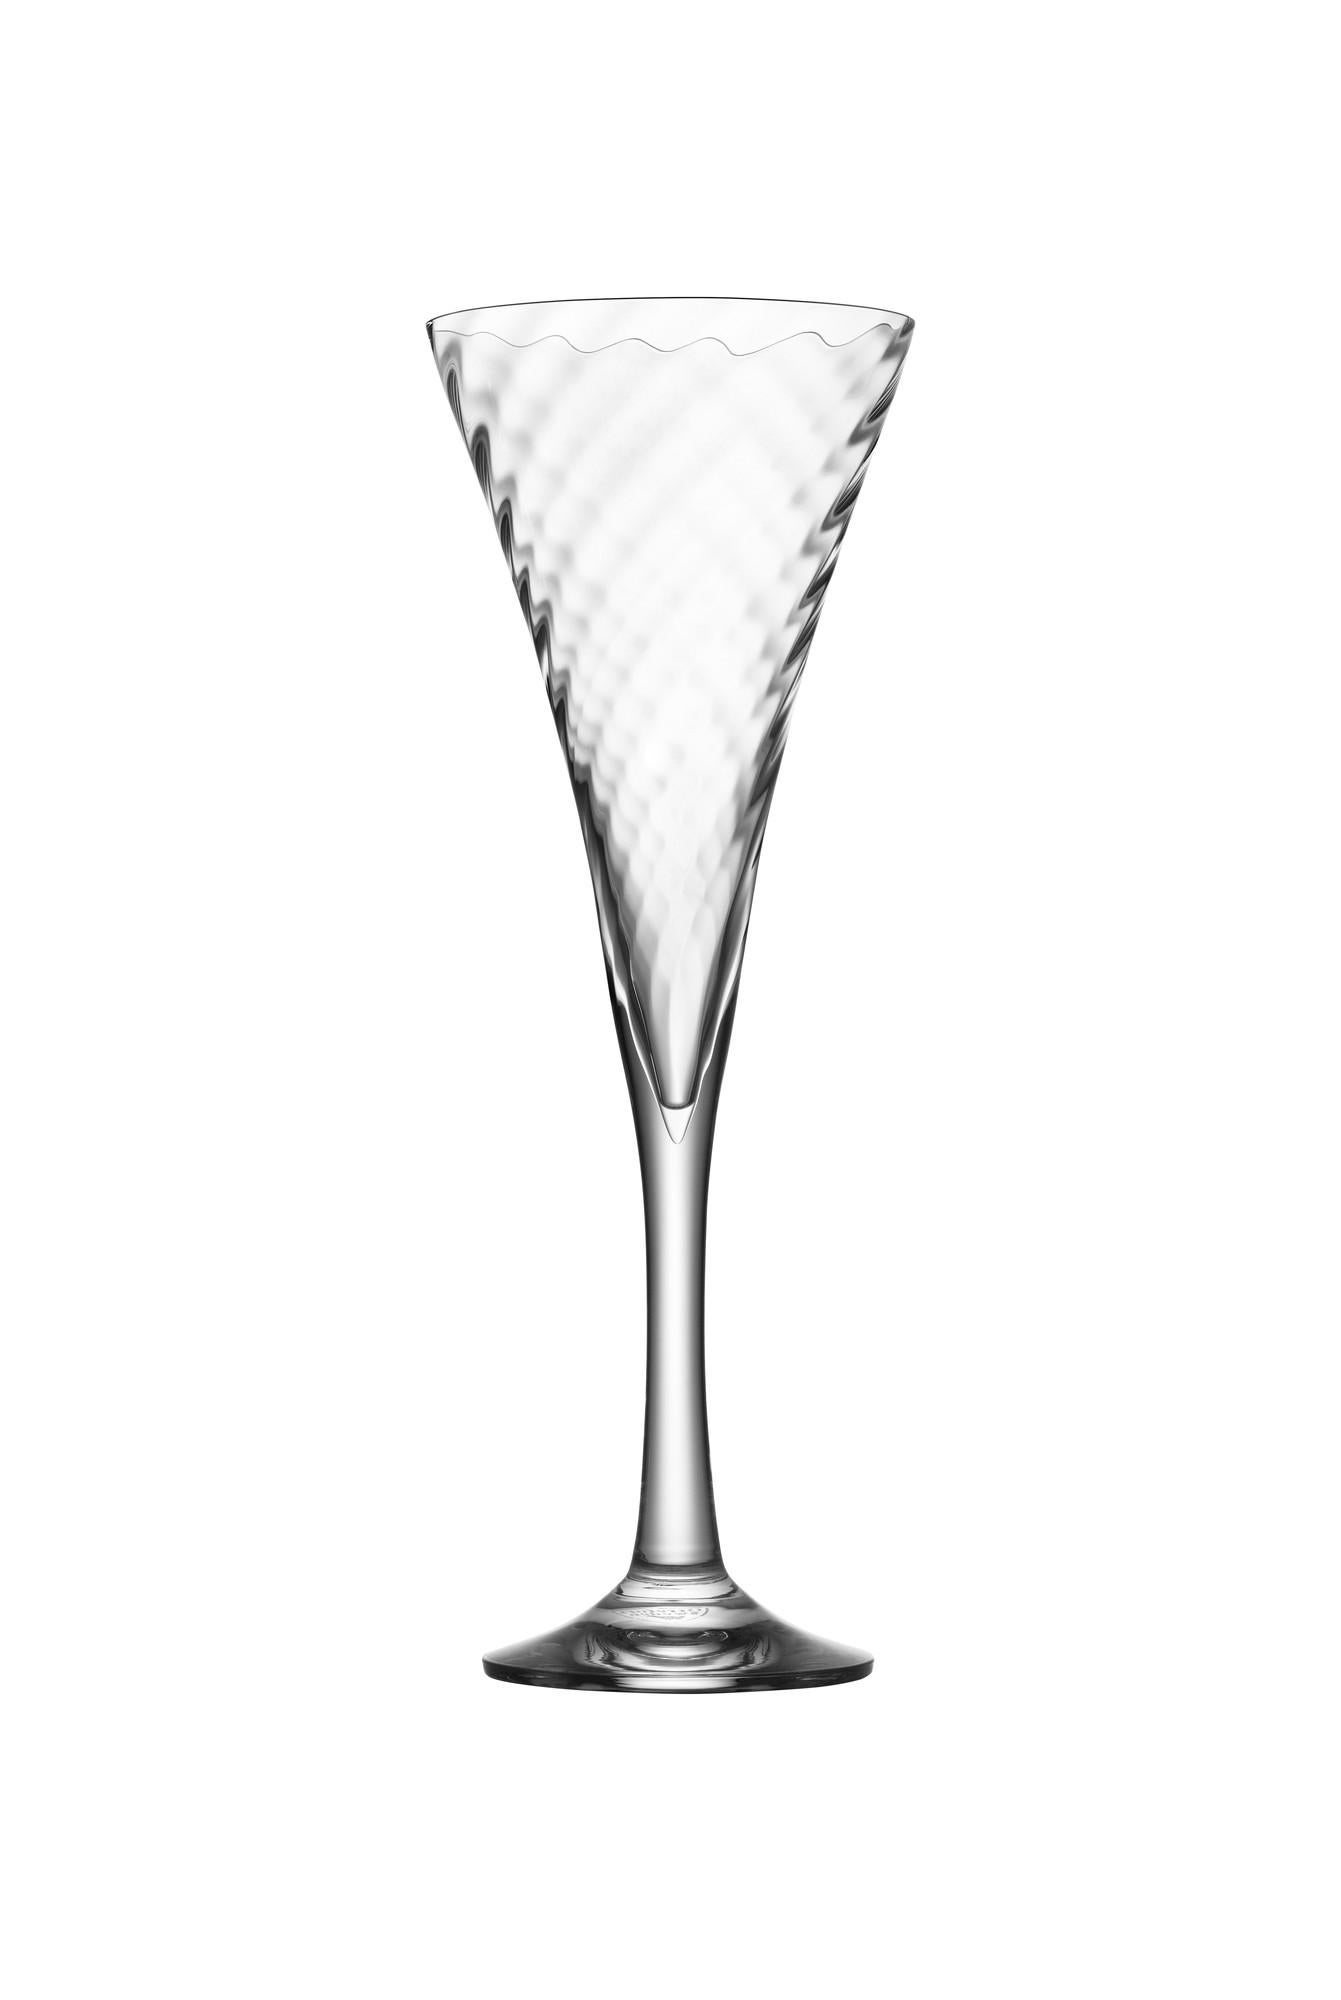 Le Champagne Helena, d'une contenance de 8,5 oz, fait partie de l'assortiment d'Orrefors depuis 1977. Le verre présente une coupe en forme de trompette recouverte d'un subtil motif de lignes diagonales, qui créent un bel effet d'optique dans le